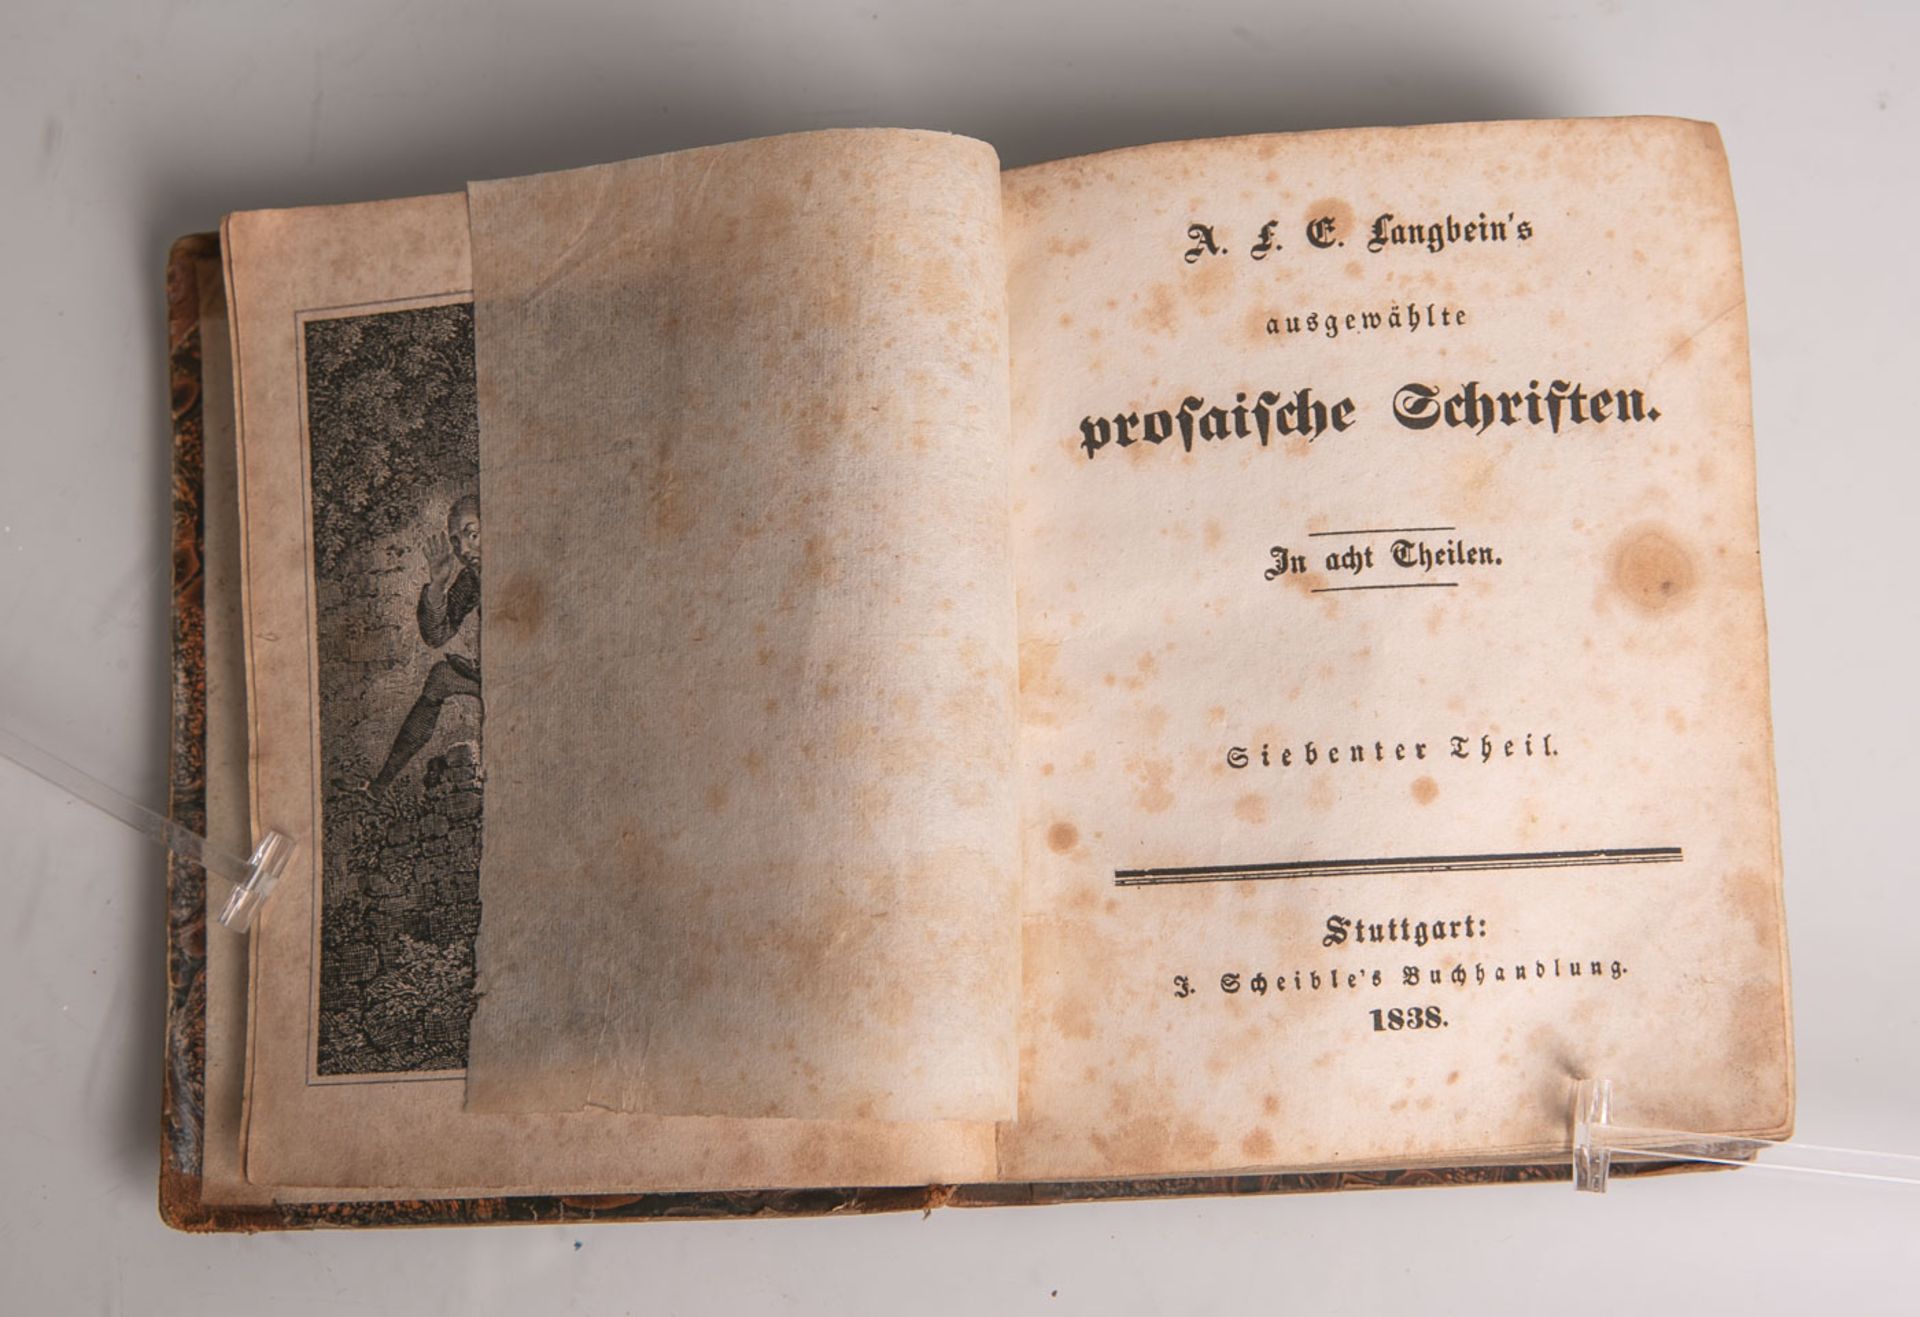 A.F.E. Langbein's ausgewählte prosaische Schriften in 8 Teilen, Teil 7, I. Scheible'sBuchhandlung,